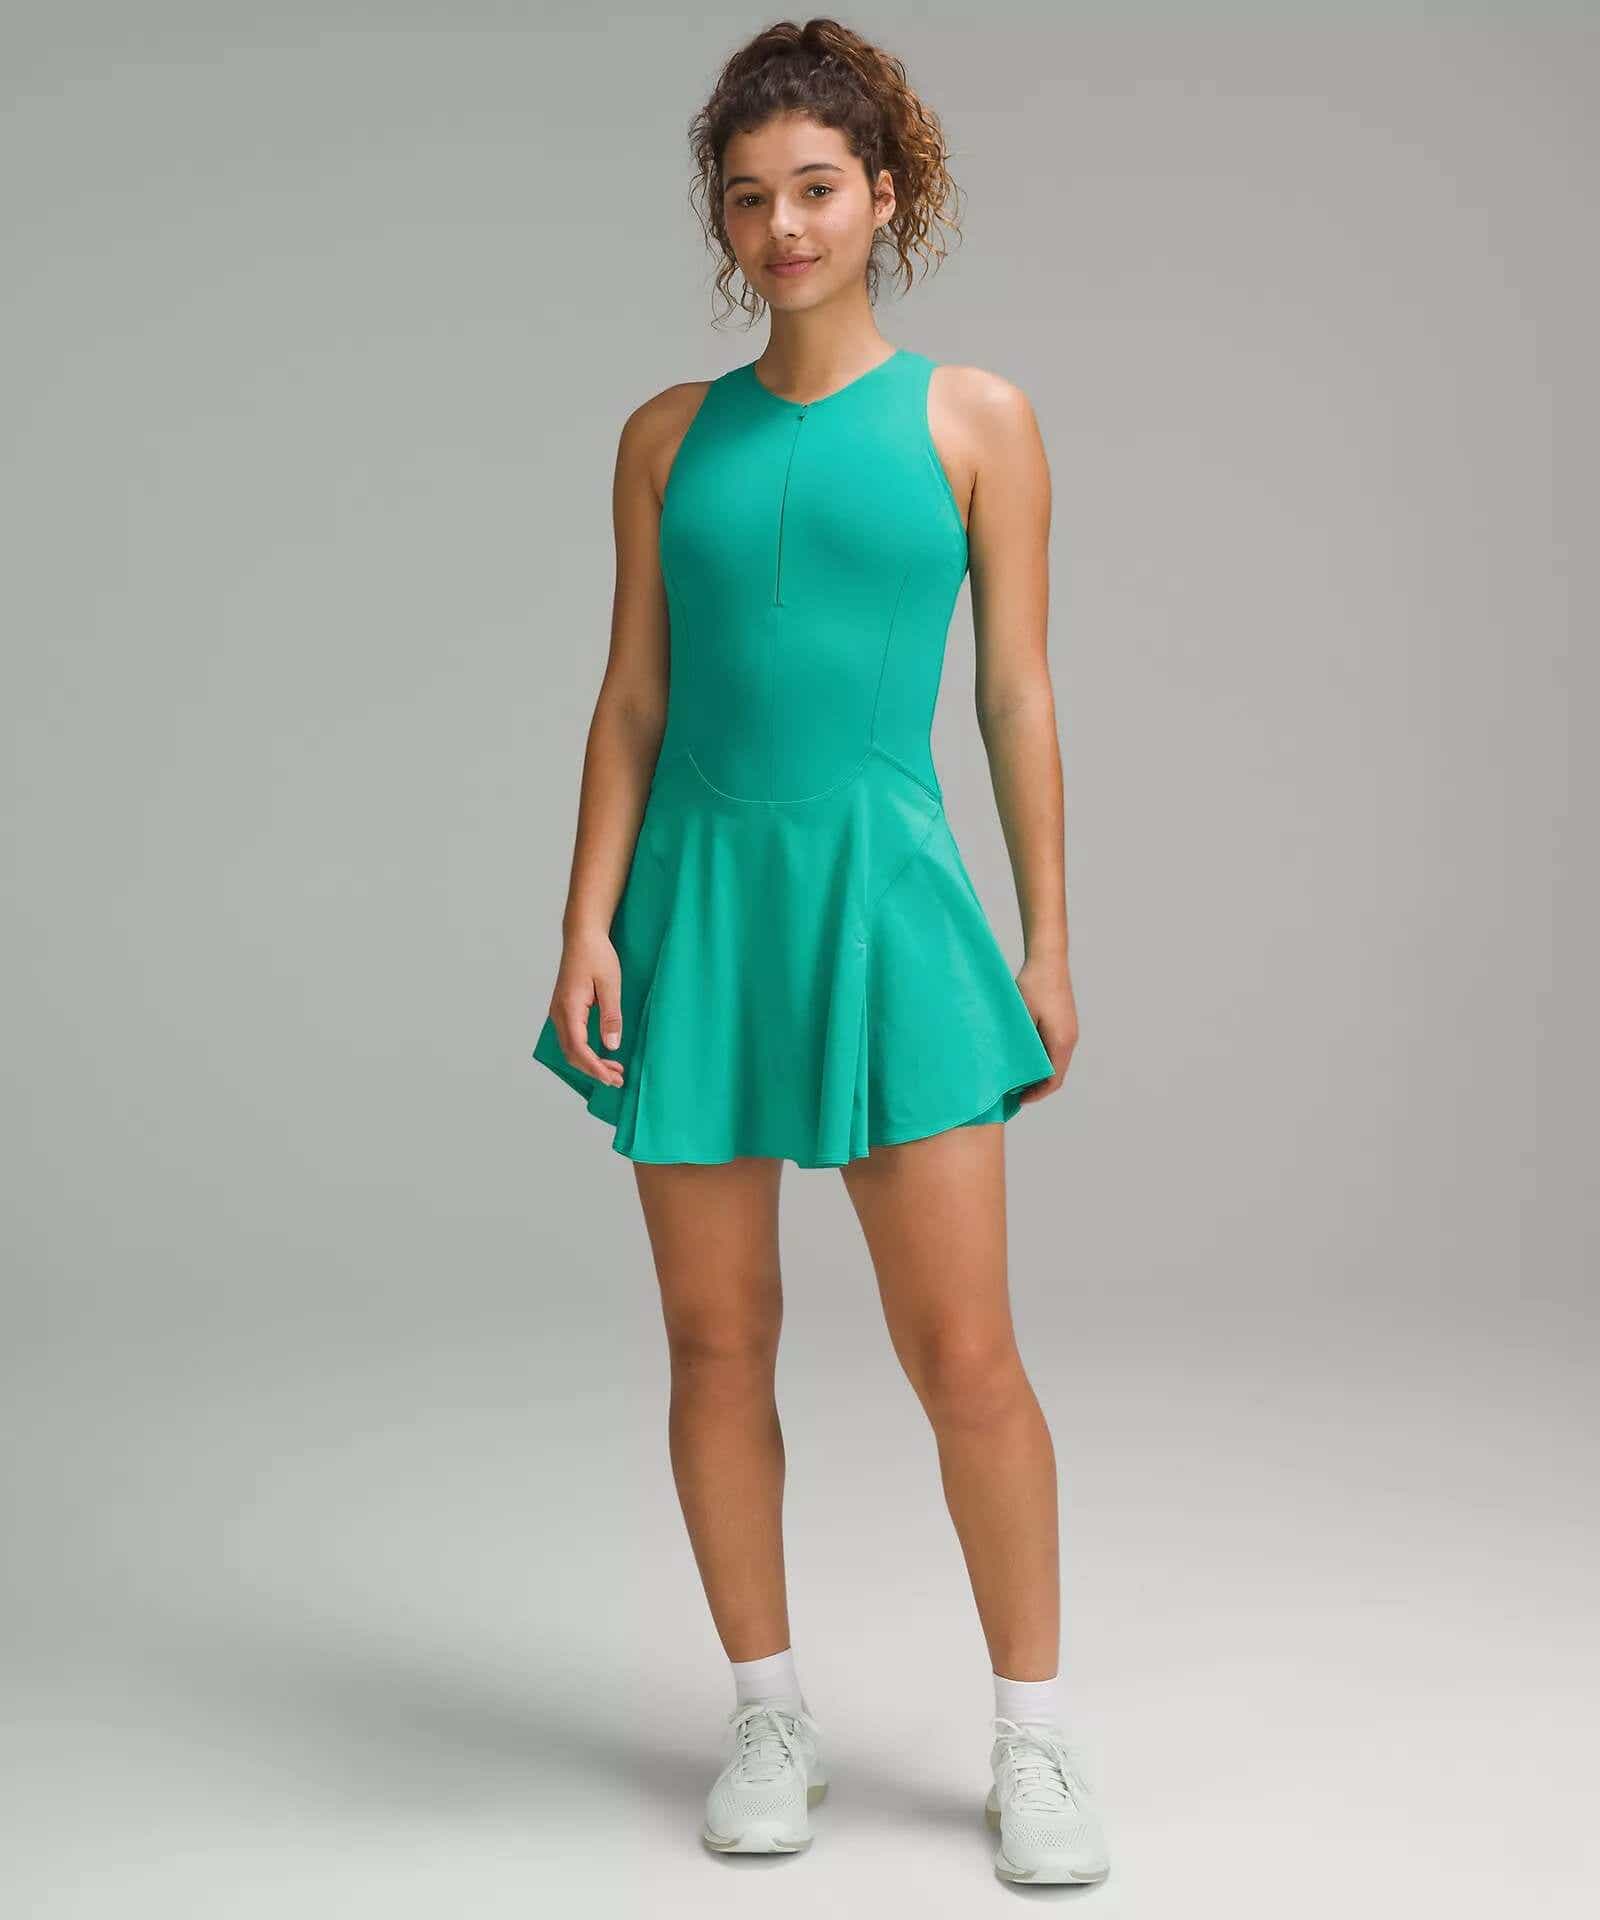 everlux tennis dress